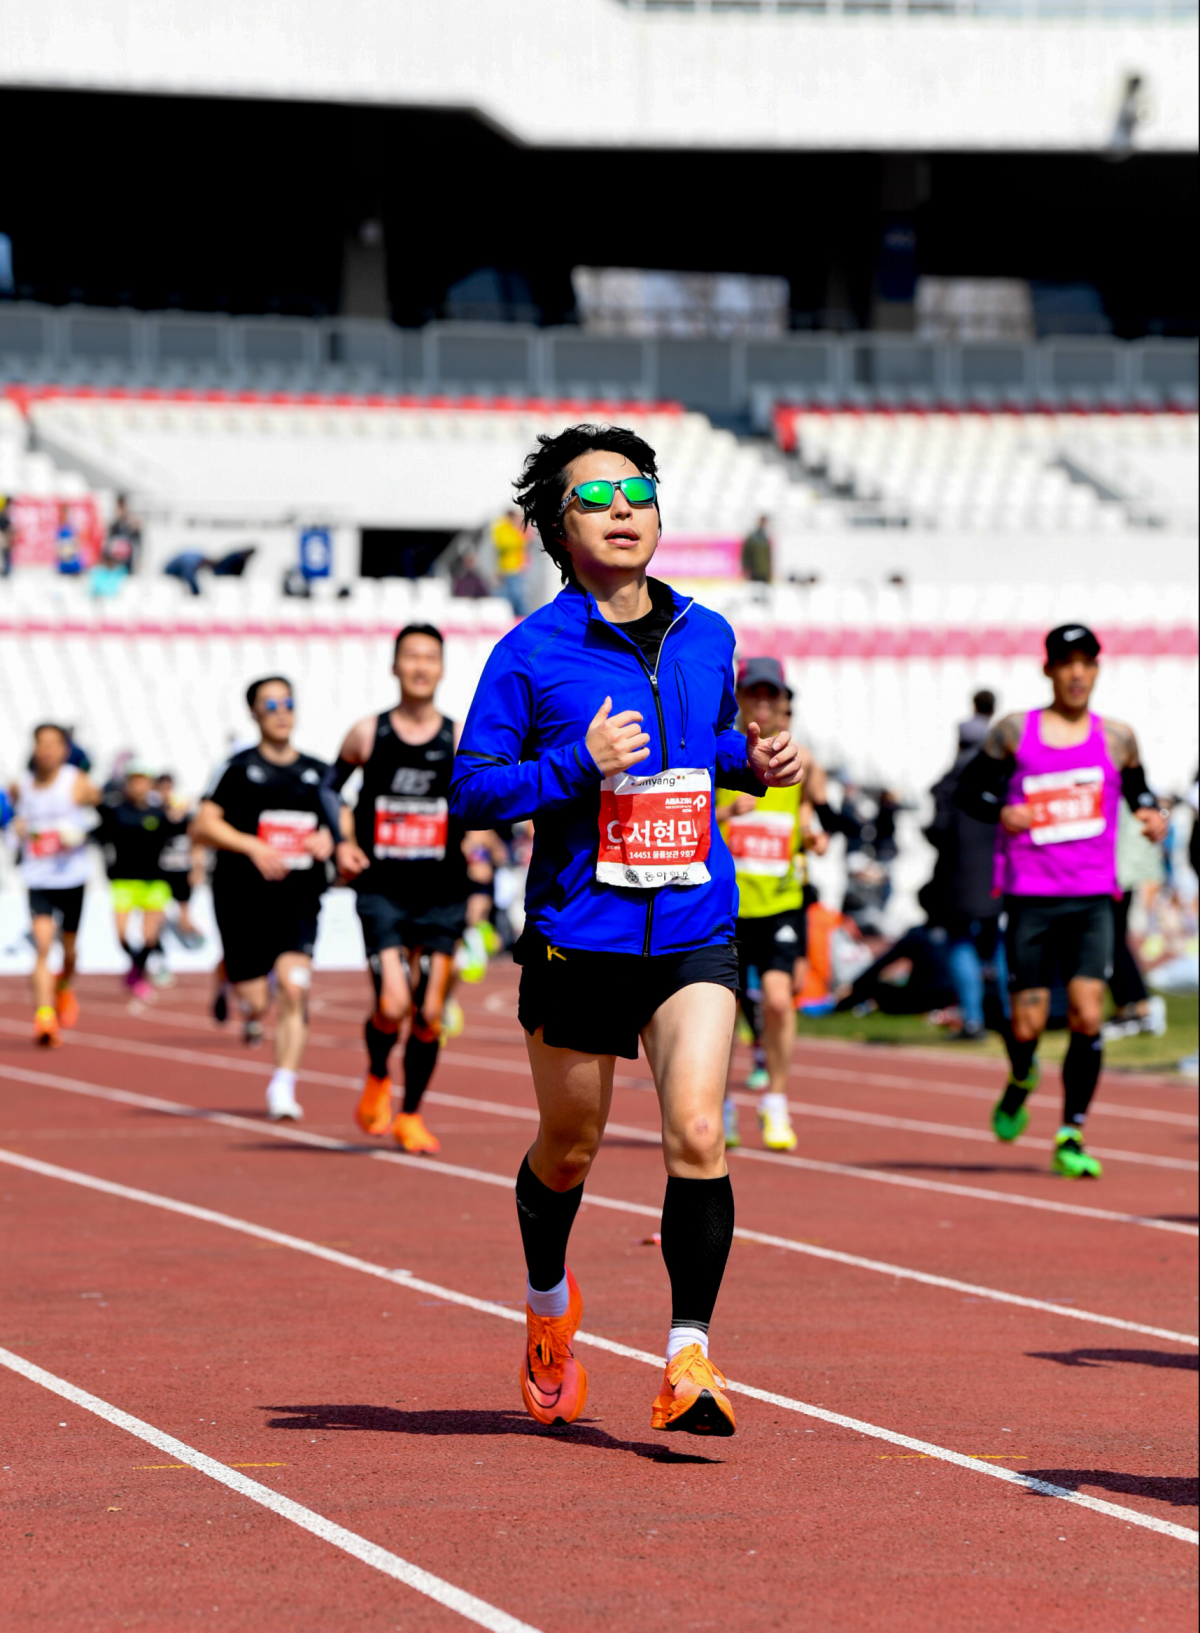 서현민 교수는 올 3월 서울국제마라톤대회에서 풀코스 도전 네 번만에 3시간 38분 18초를 기록했다. 서 교수가 결승선을 앞두고 막바지 힘을 내고 있다. 서현민 교수 제공